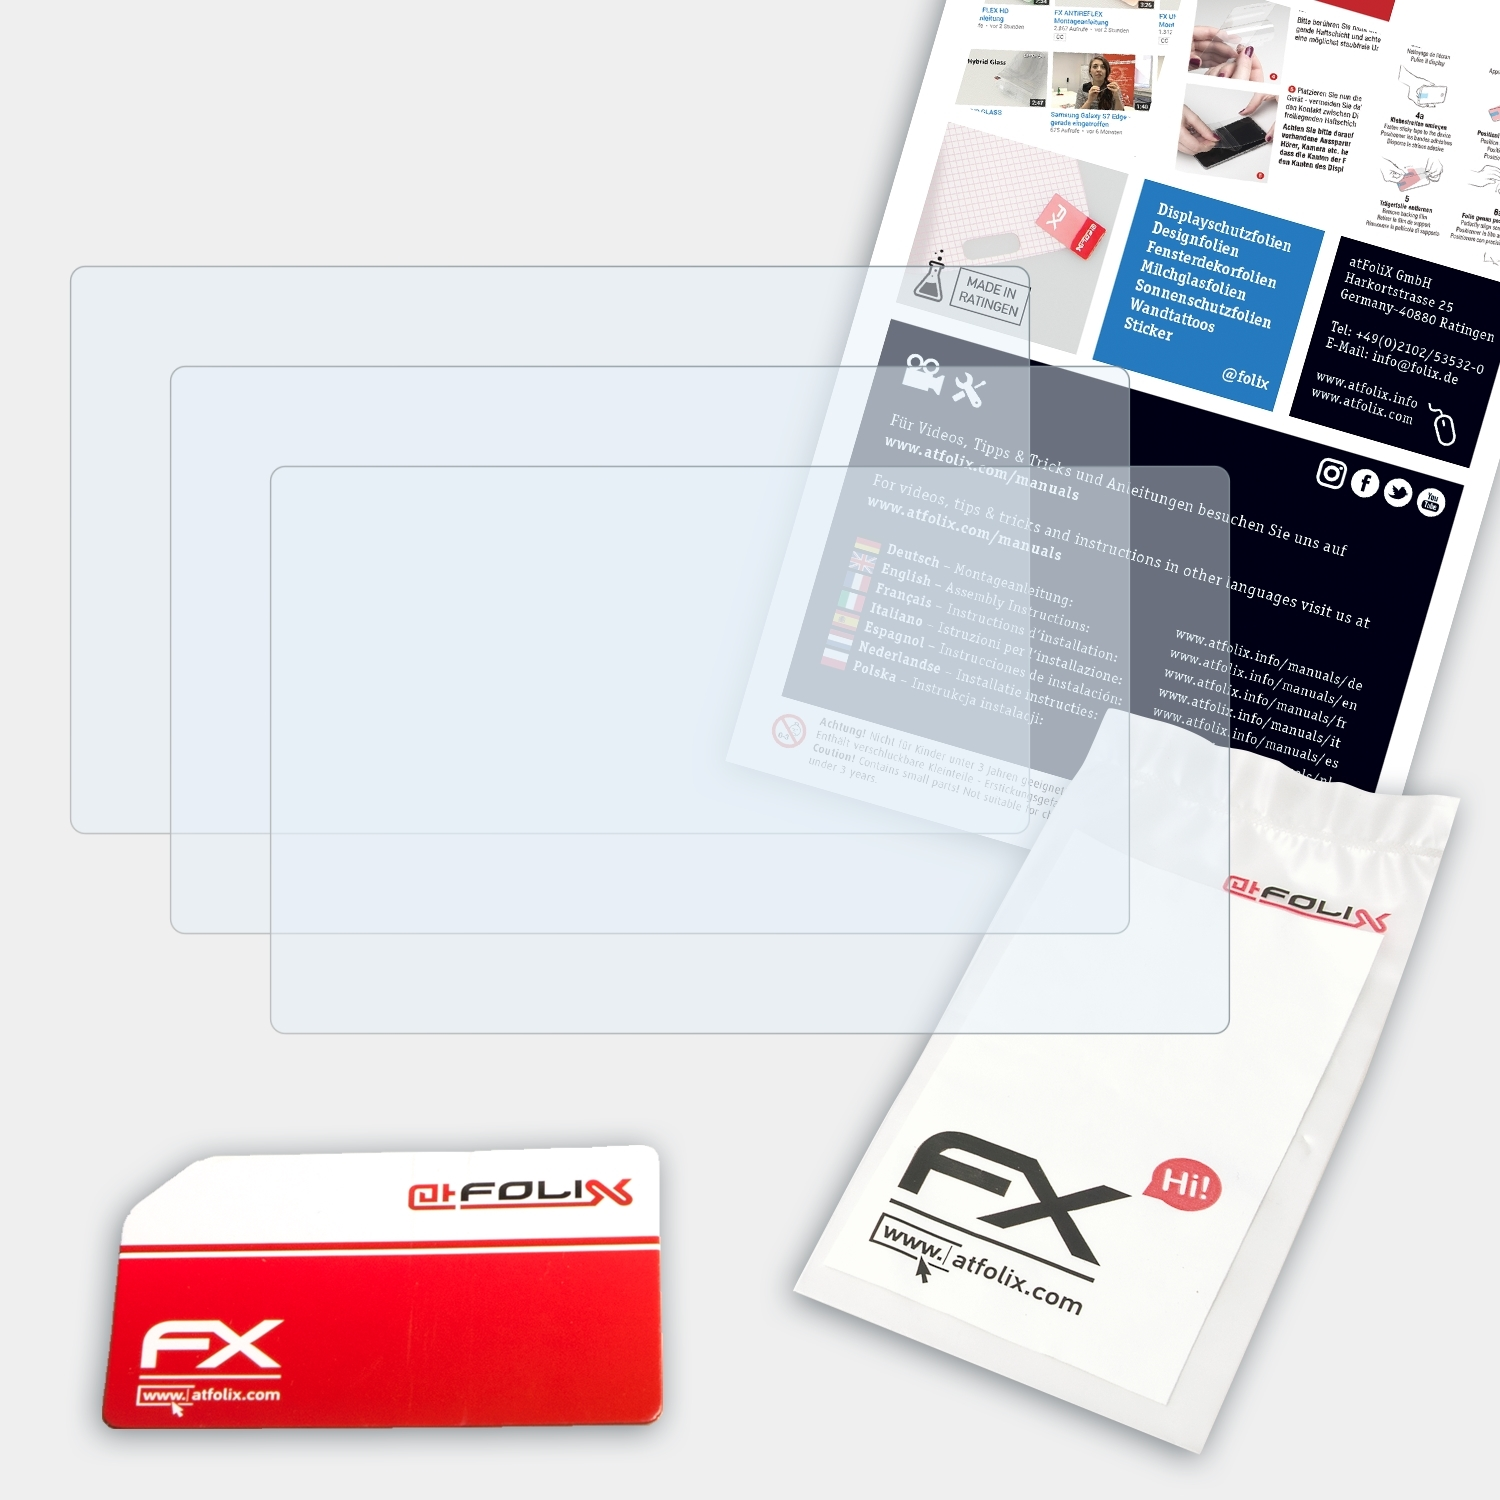 ATFOLIX 3x FX-Clear Displayschutz(für Sony NEX-F3)